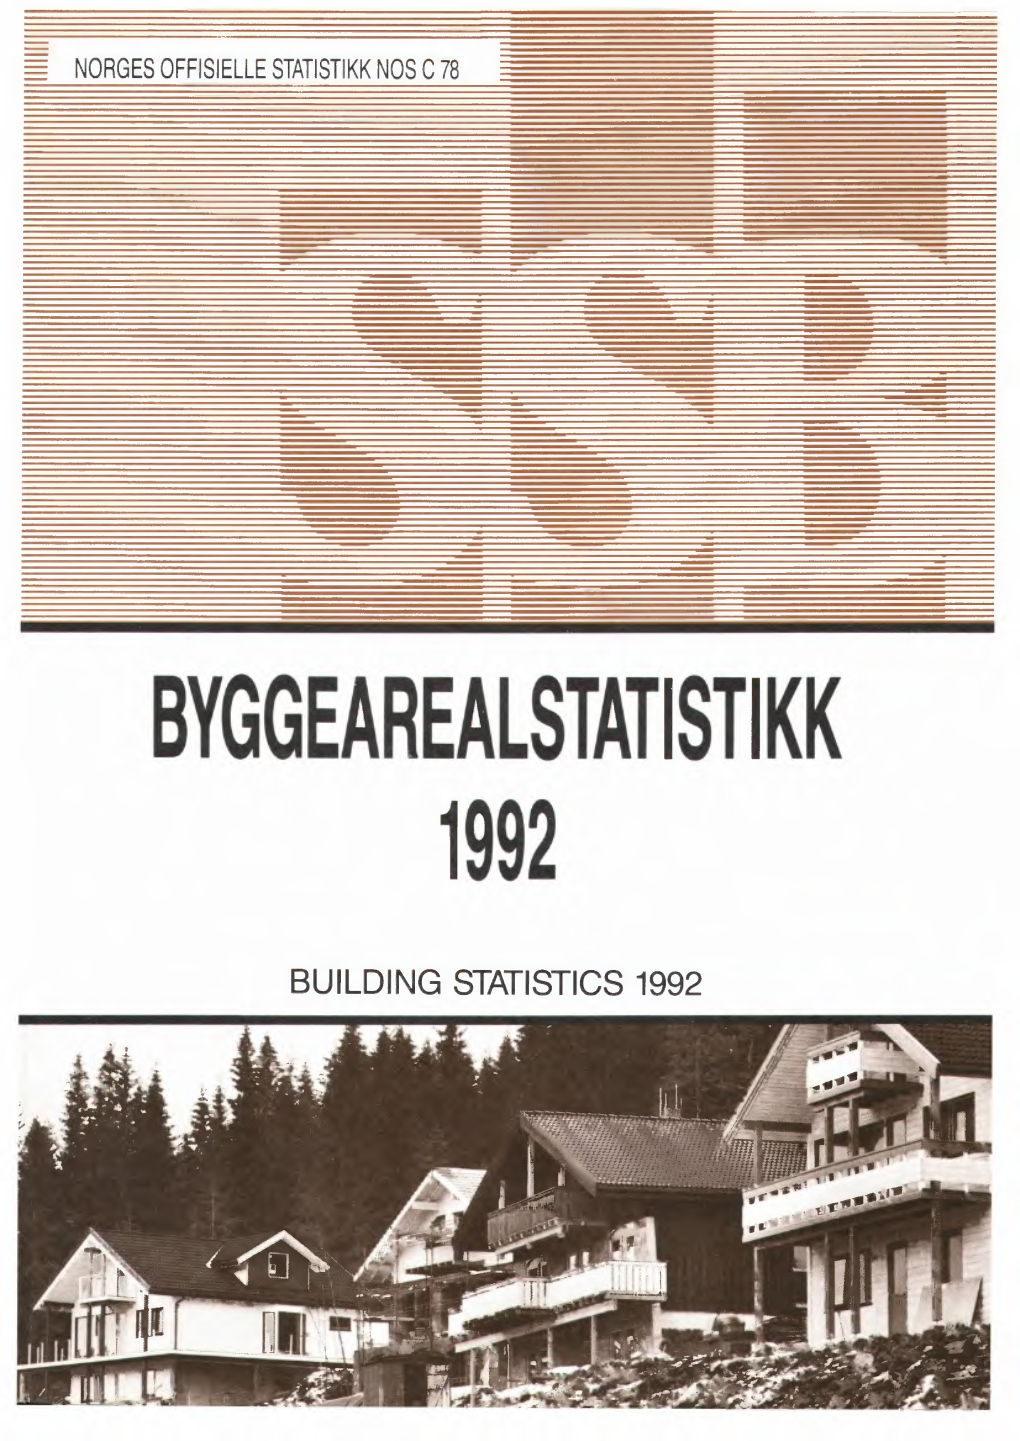 Byggearealstatistikk 1992 29